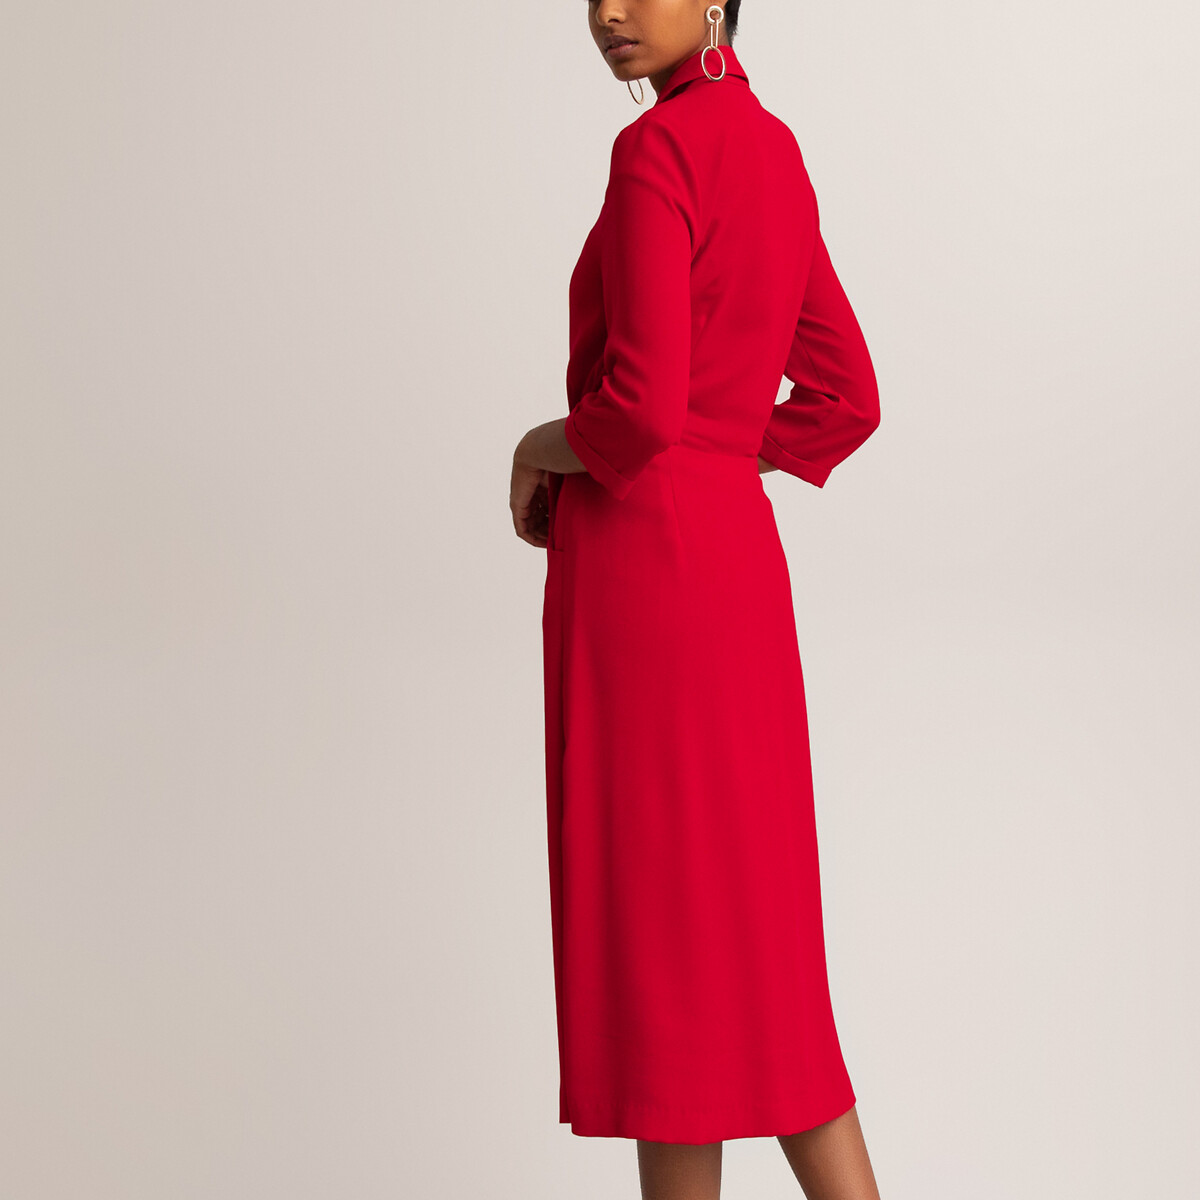 Платье La Redoute С воротником и рукавами 46 (FR) - 52 (RUS) красный, размер 46 (FR) - 52 (RUS) С воротником и рукавами 46 (FR) - 52 (RUS) красный - фото 4